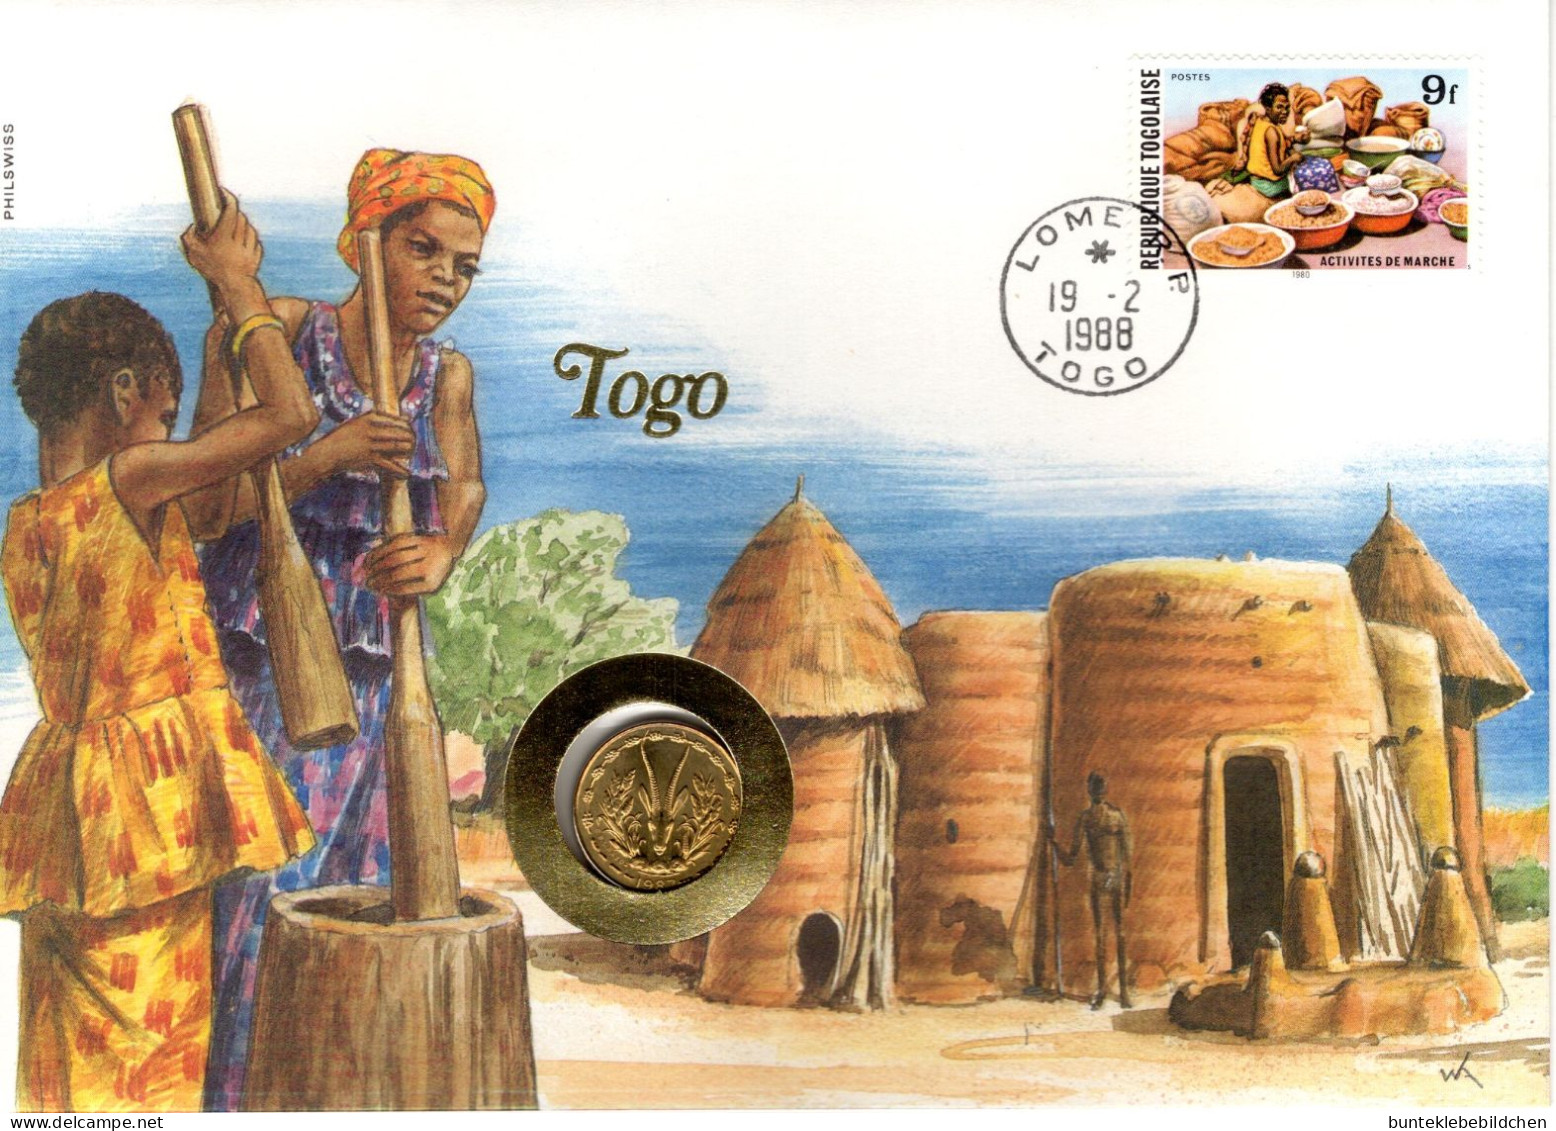 Numisbrief - Togo - Togo